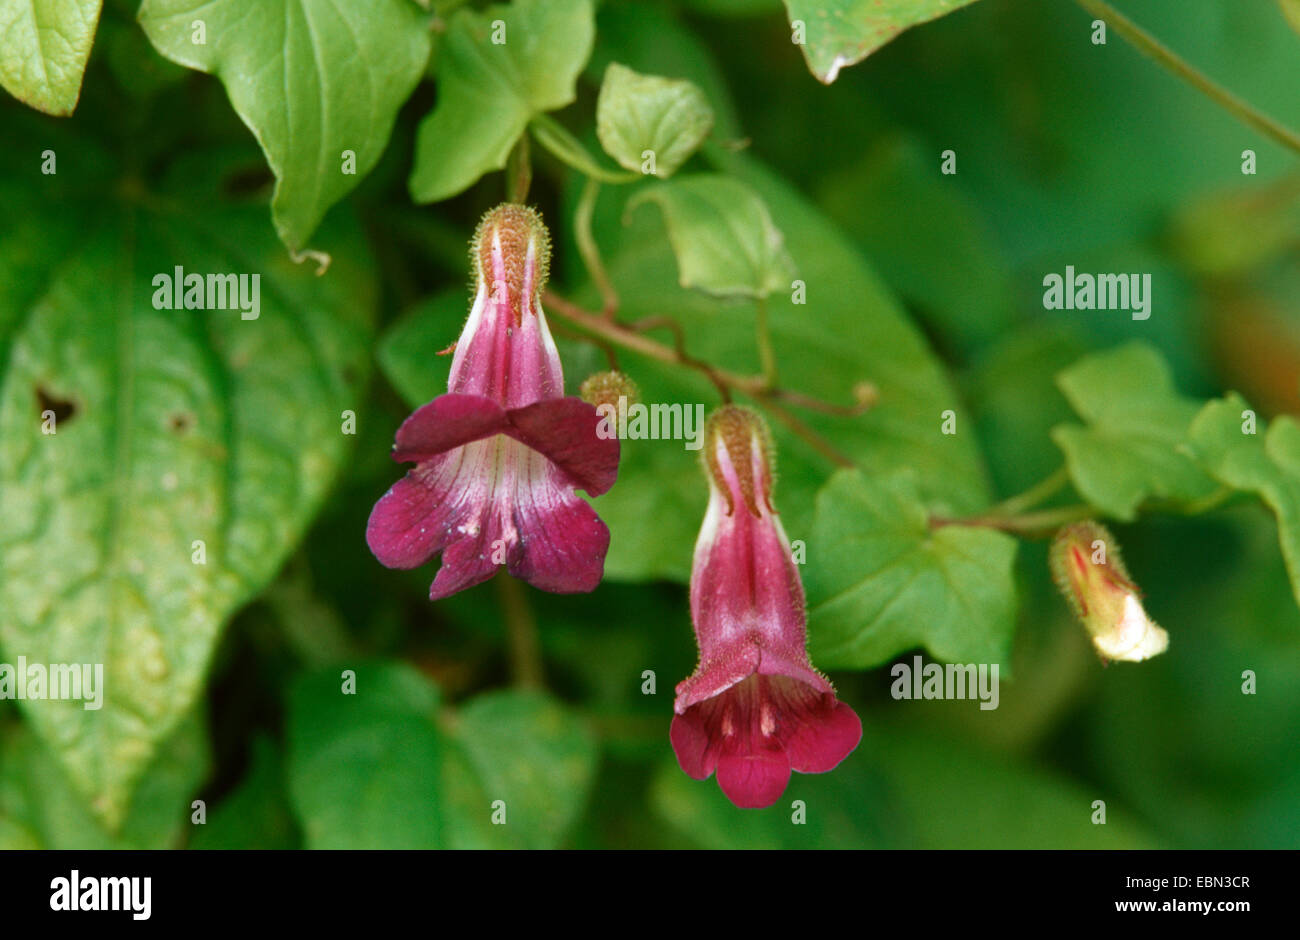 creeping snapdragon (Asarina barclaiana), blooming Stock Photo